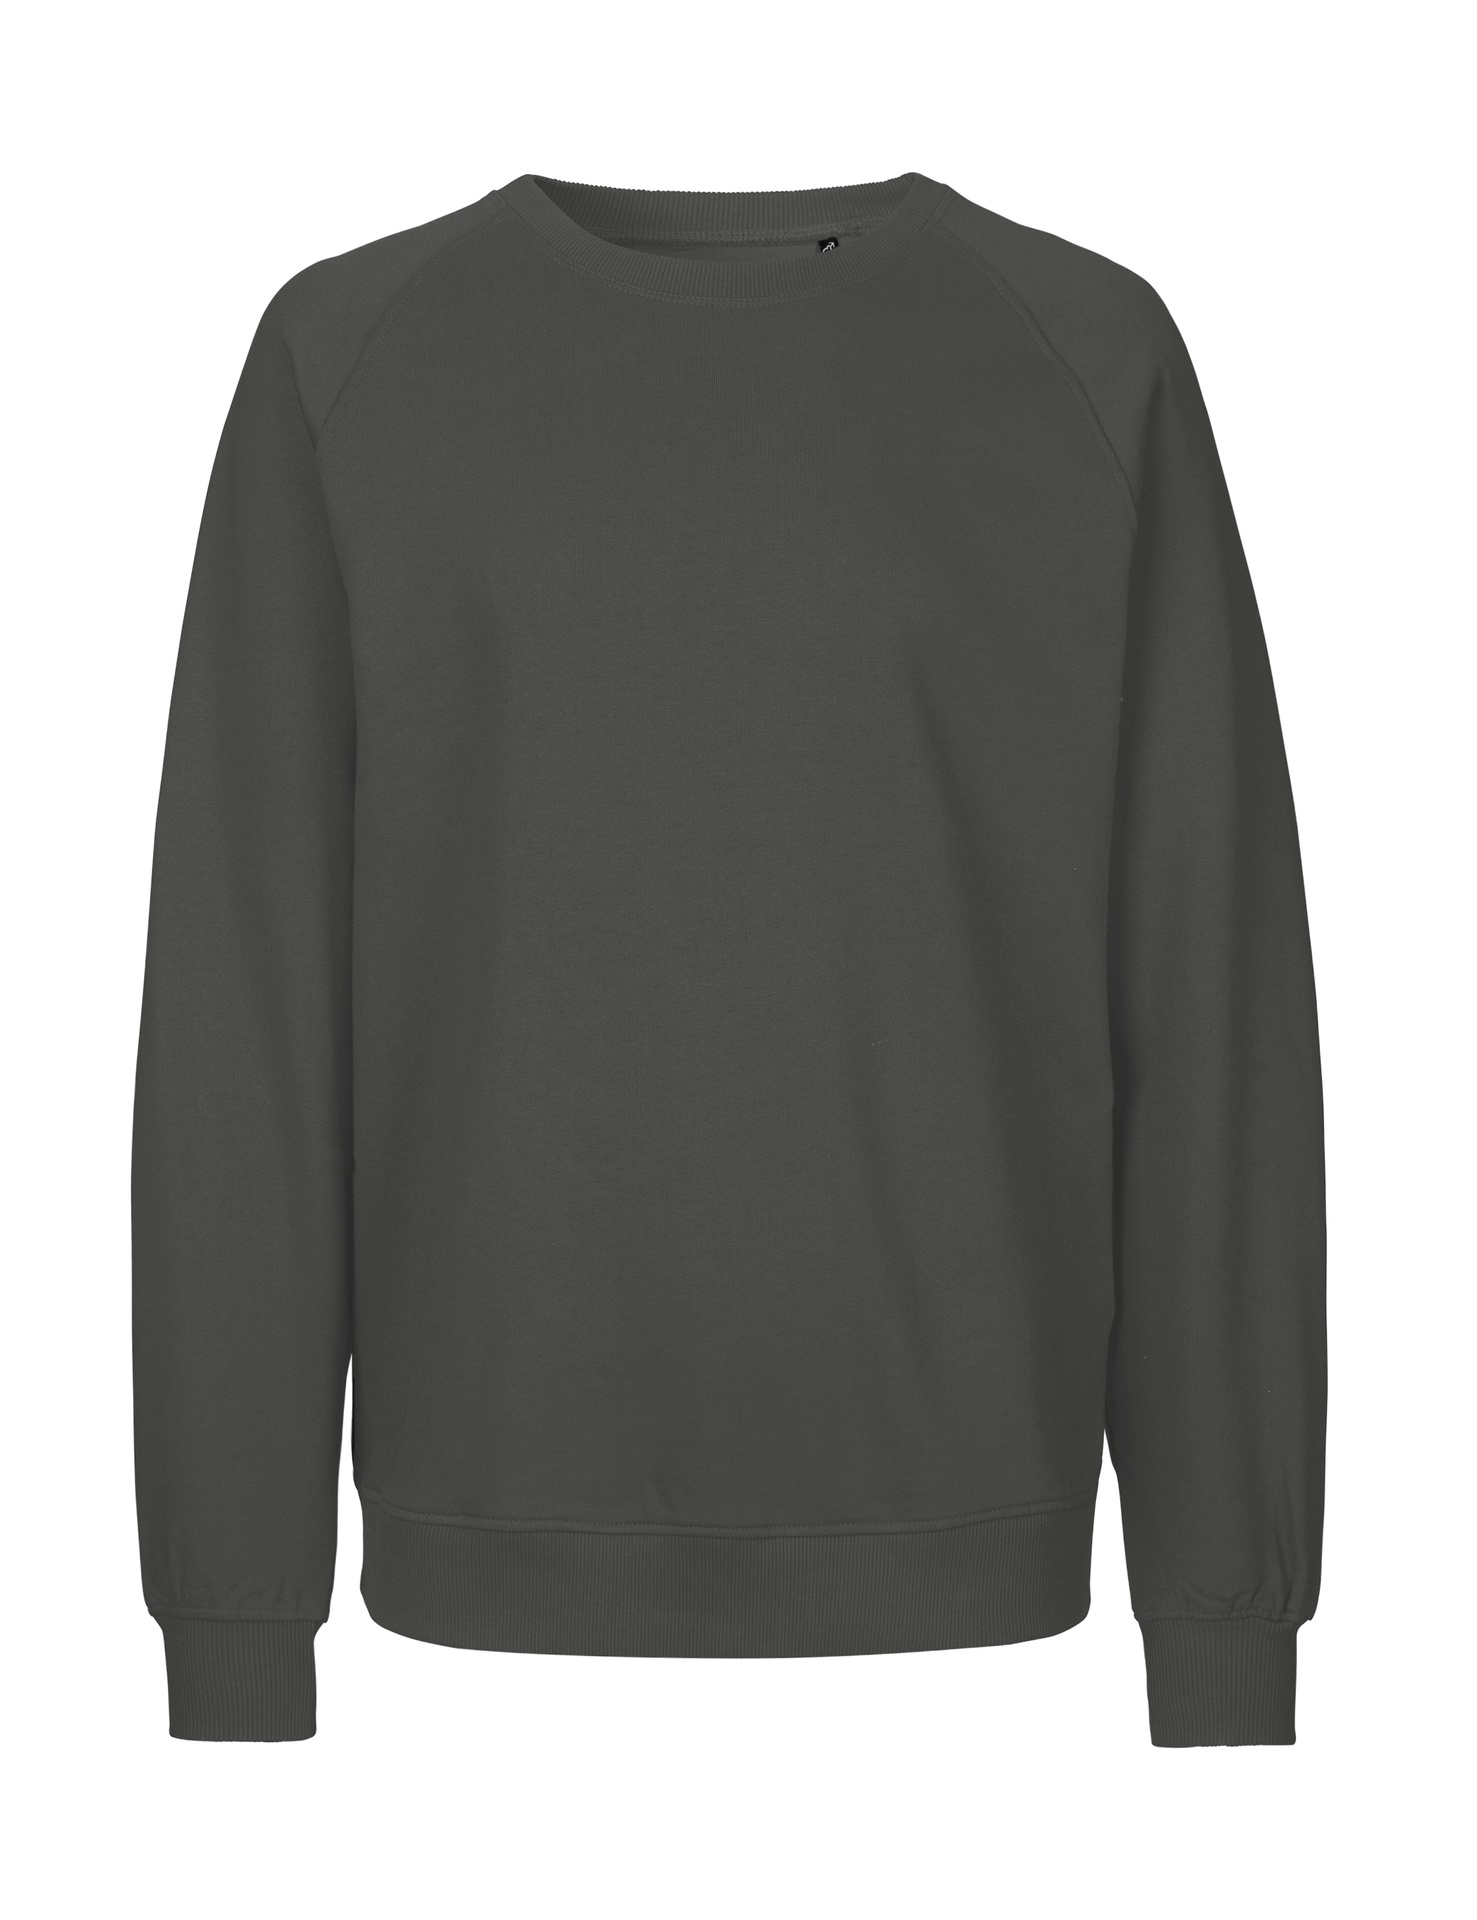 [PR/02688] Unisex Sweatshirt (Charcoal 06, XS)